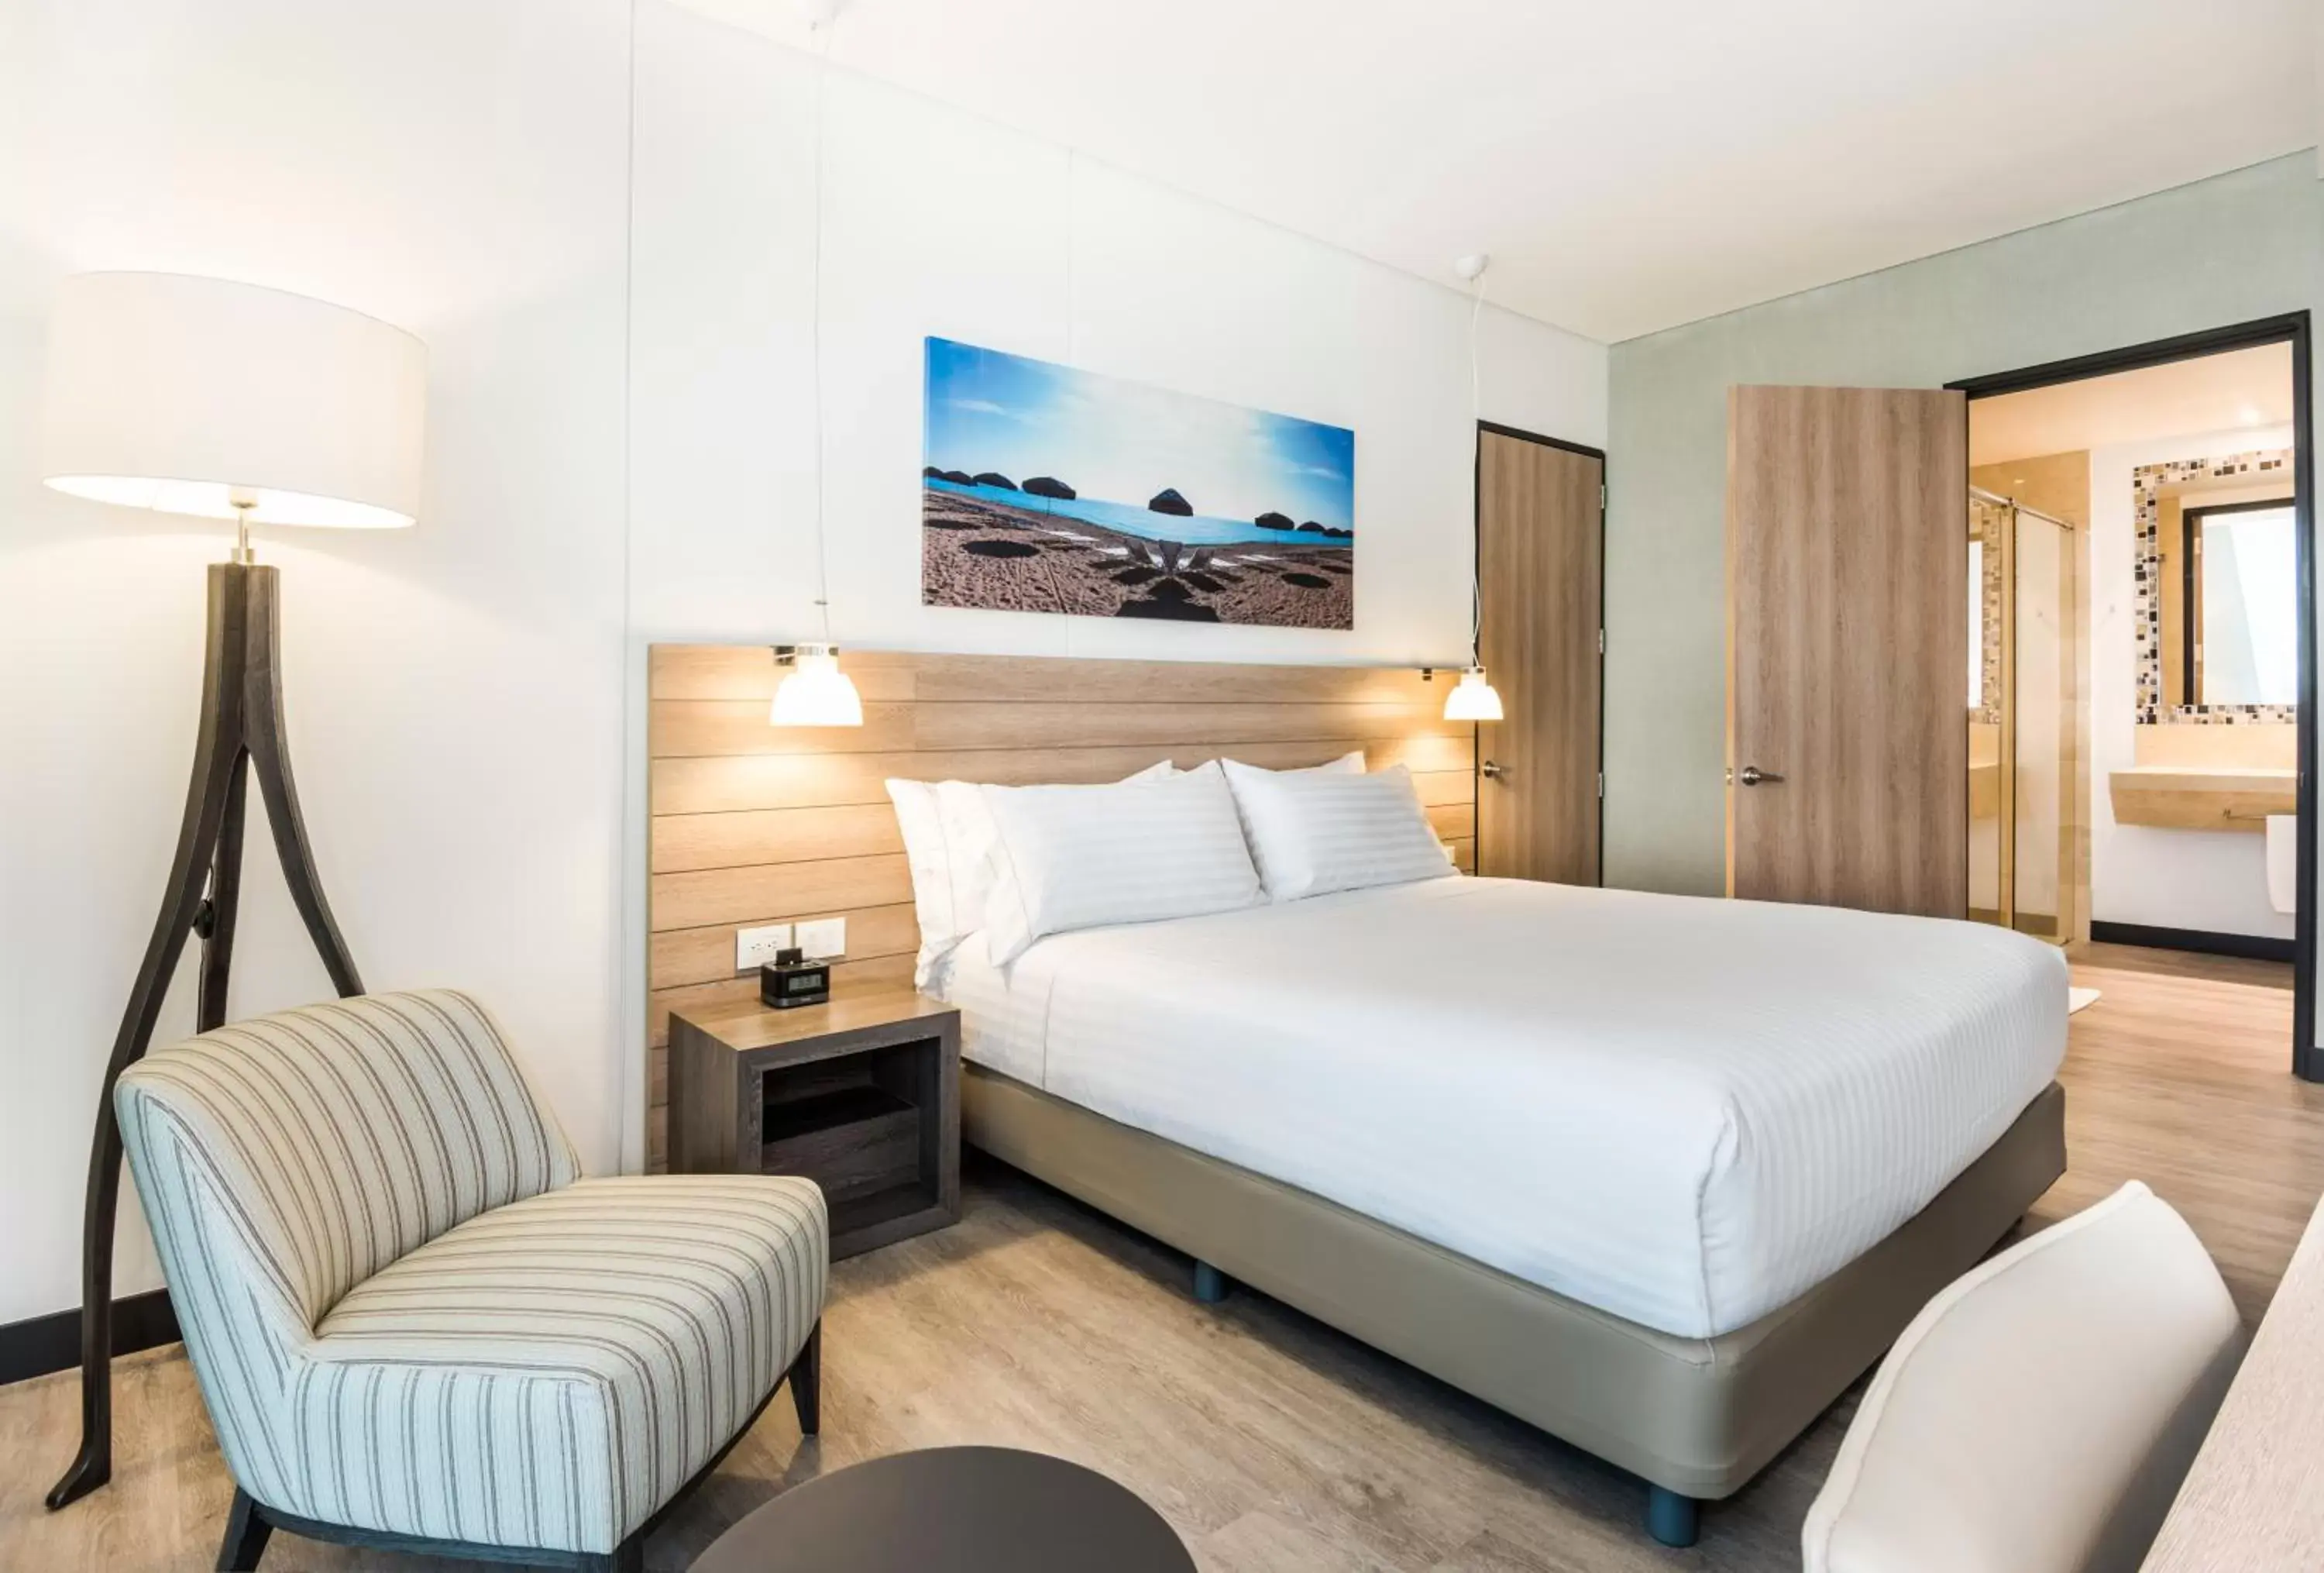 Bedroom, Room Photo in Holiday Inn Express - Barranquilla Buenavista, an IHG Hotel